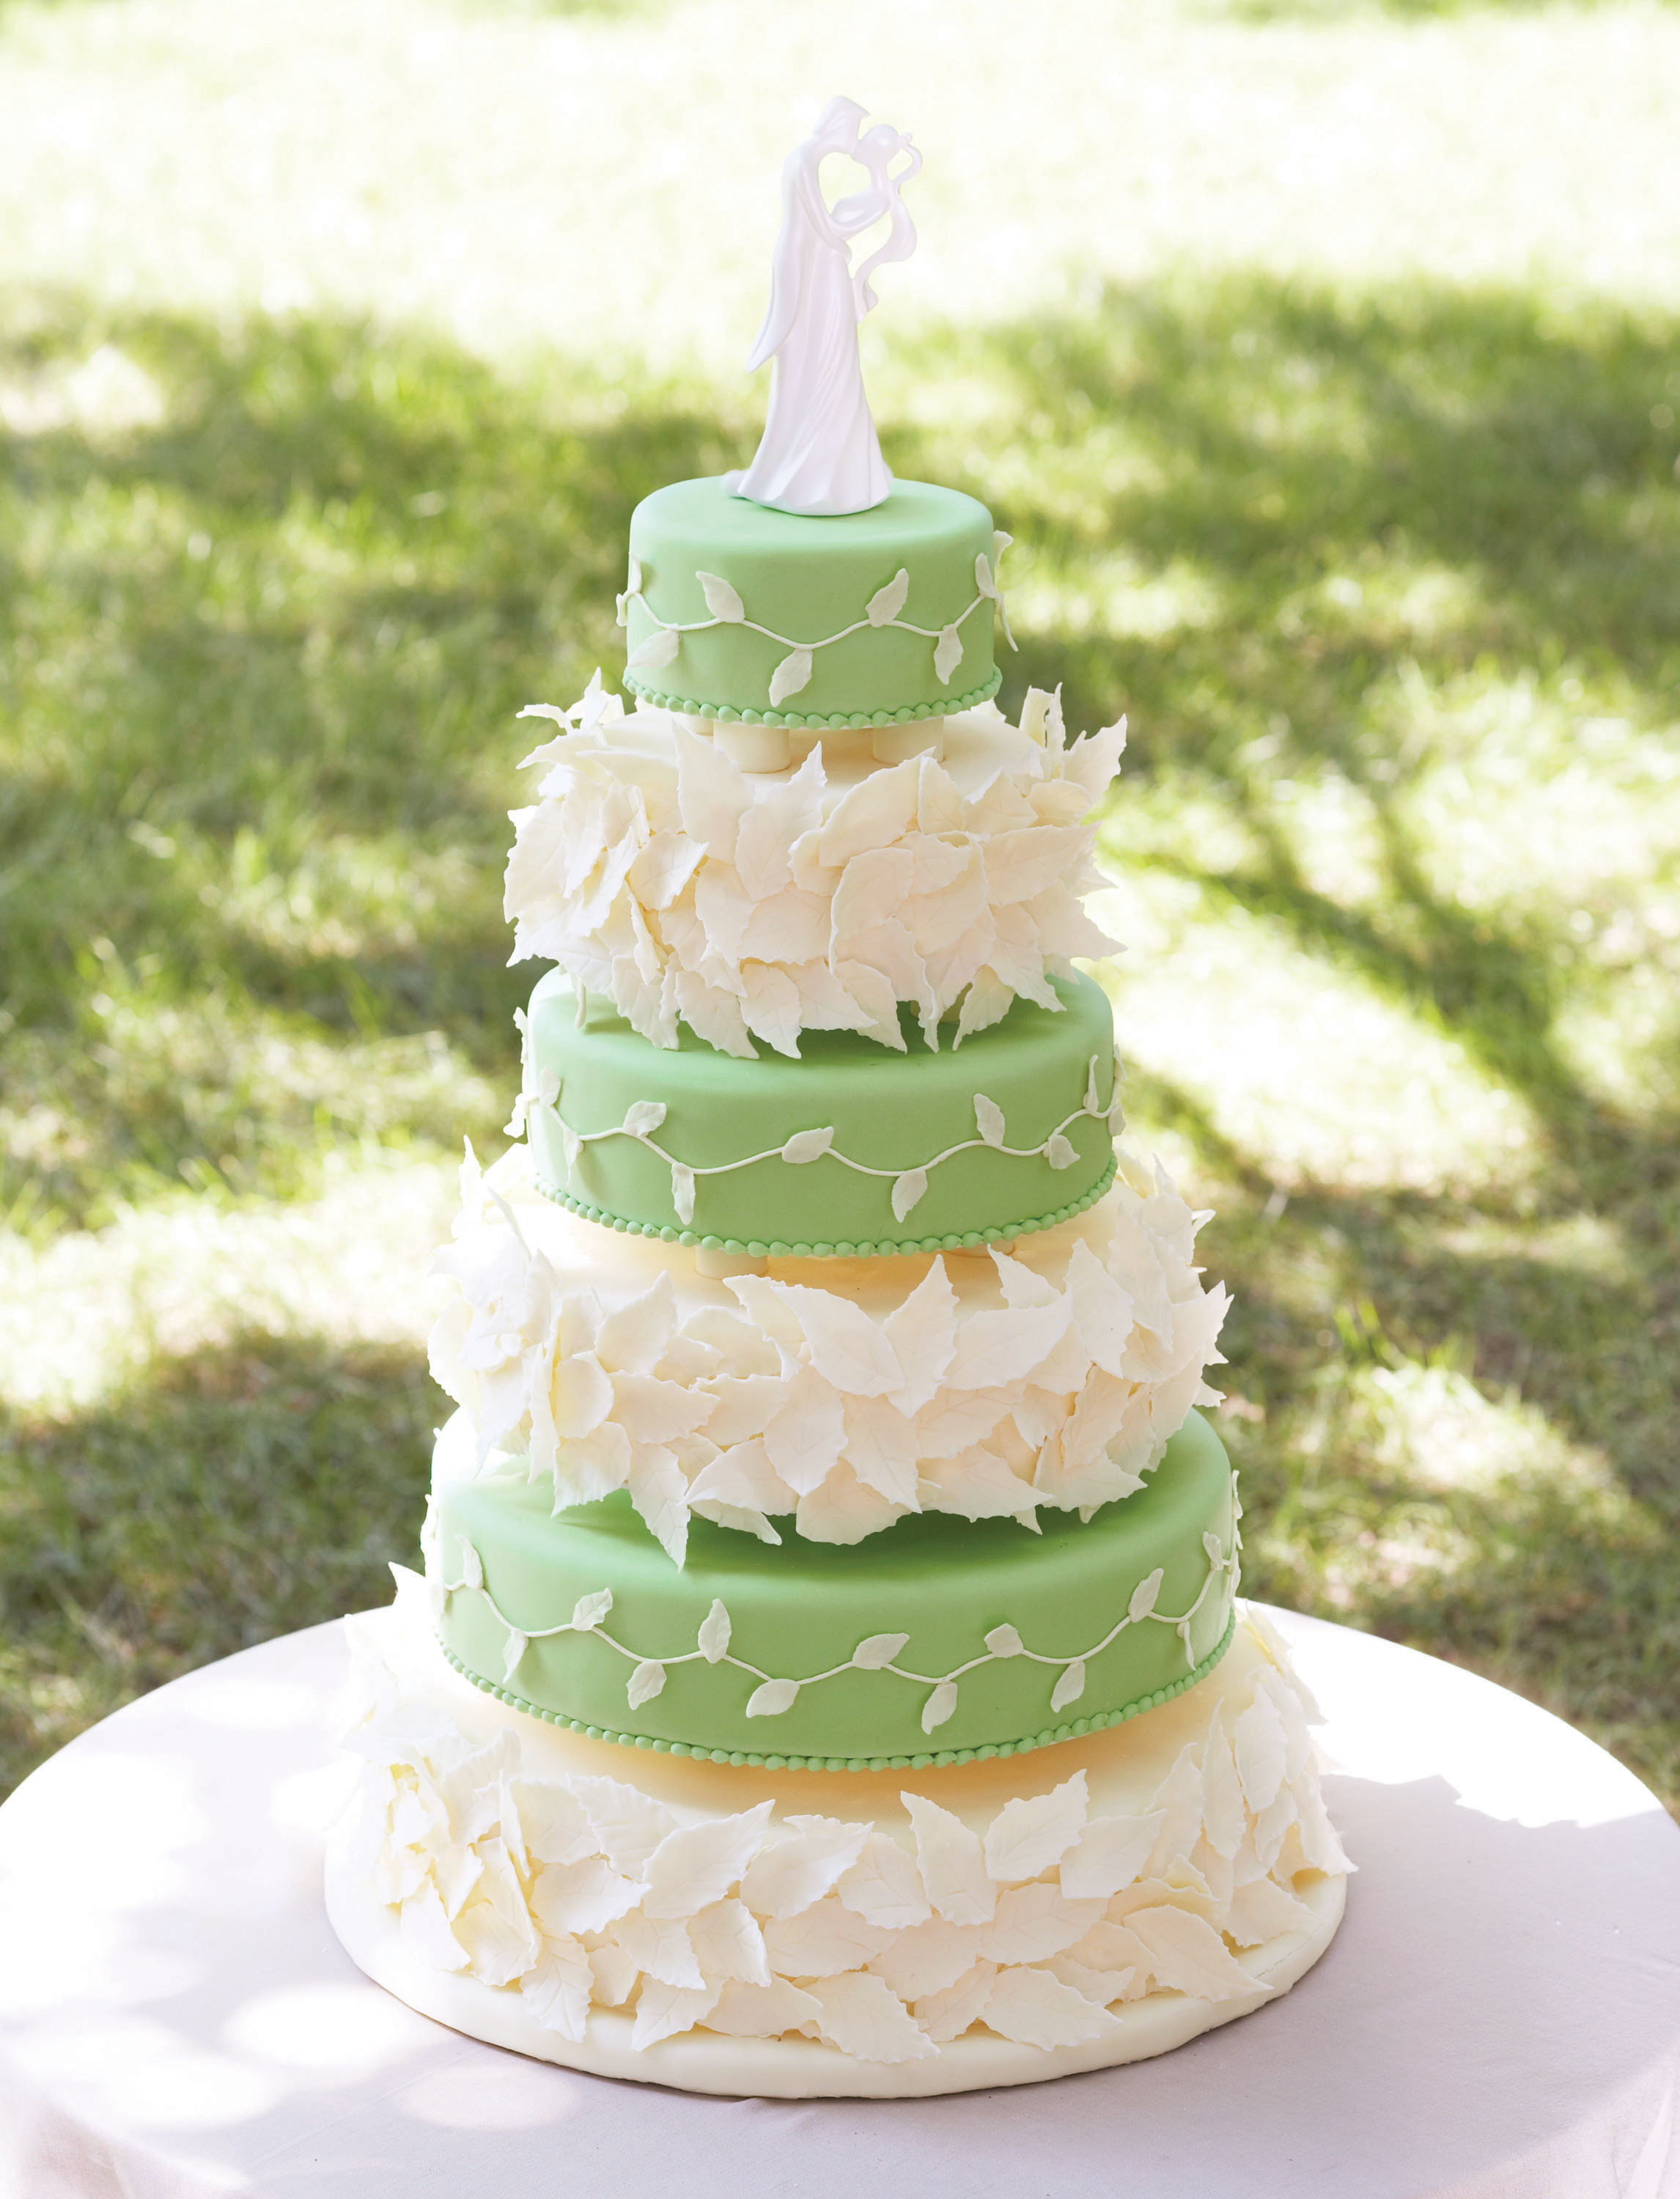 Wilton Wedding Cakes Recipes
 Wilton Wedding Cakes